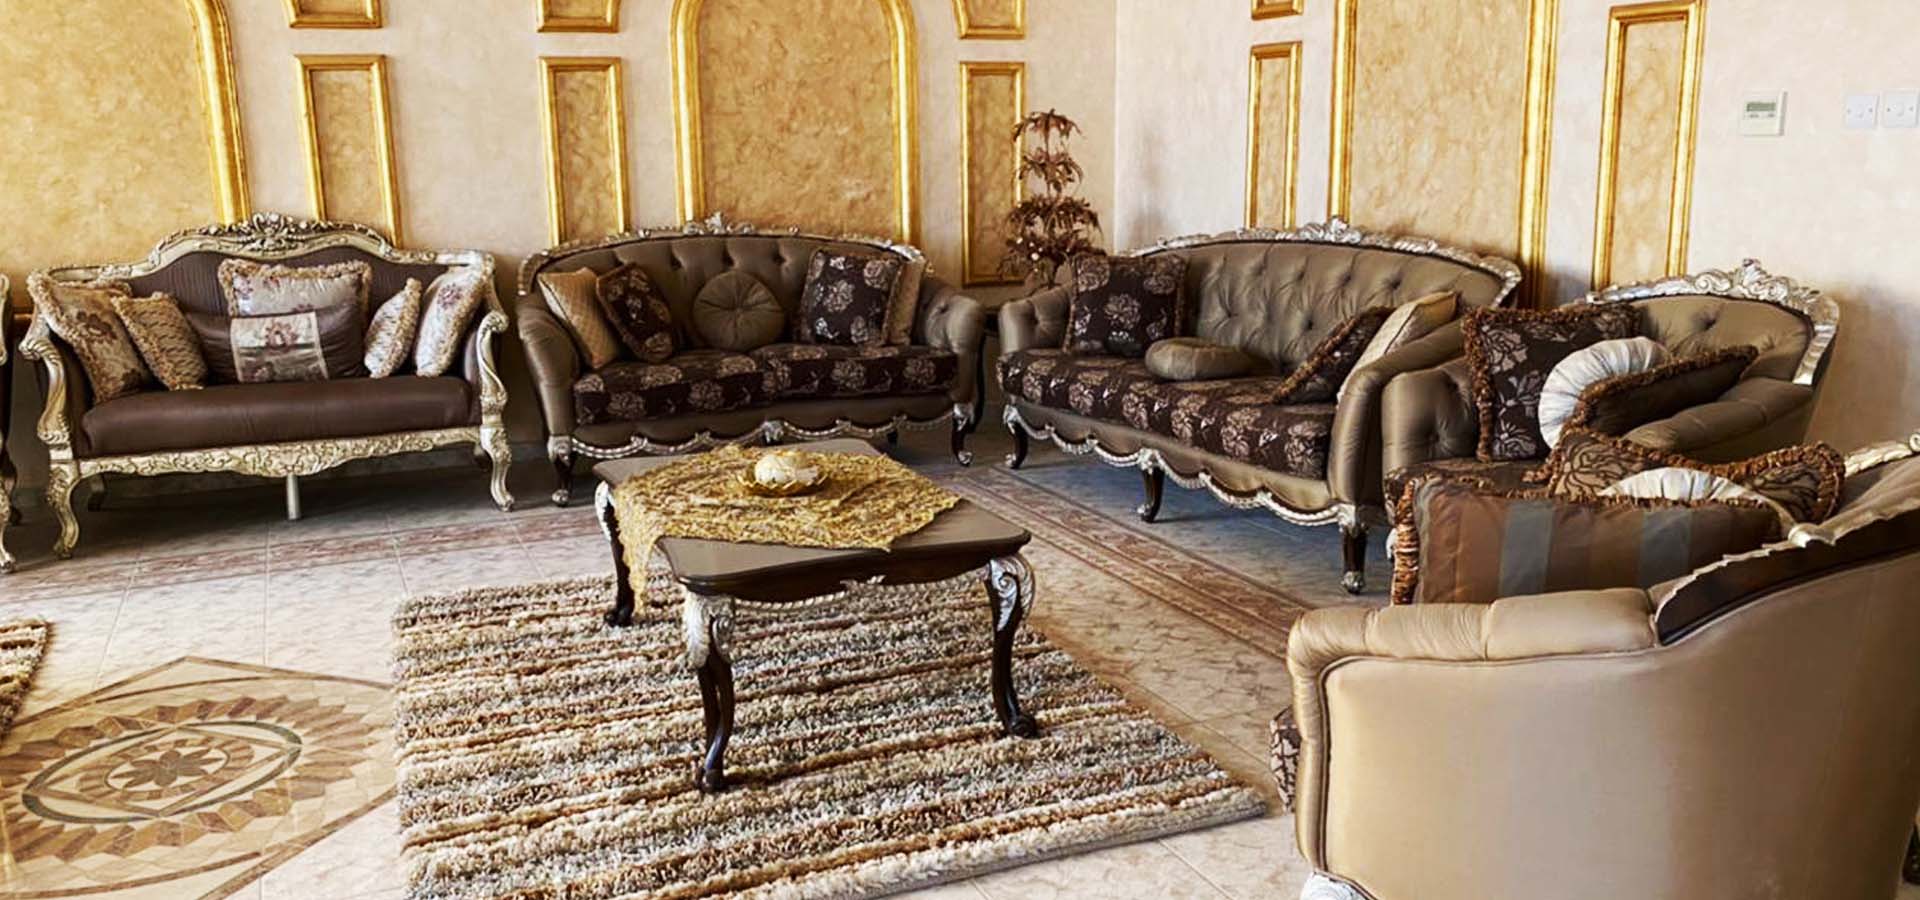 Used Furniture Buyers In Dubai Silicon Oasis